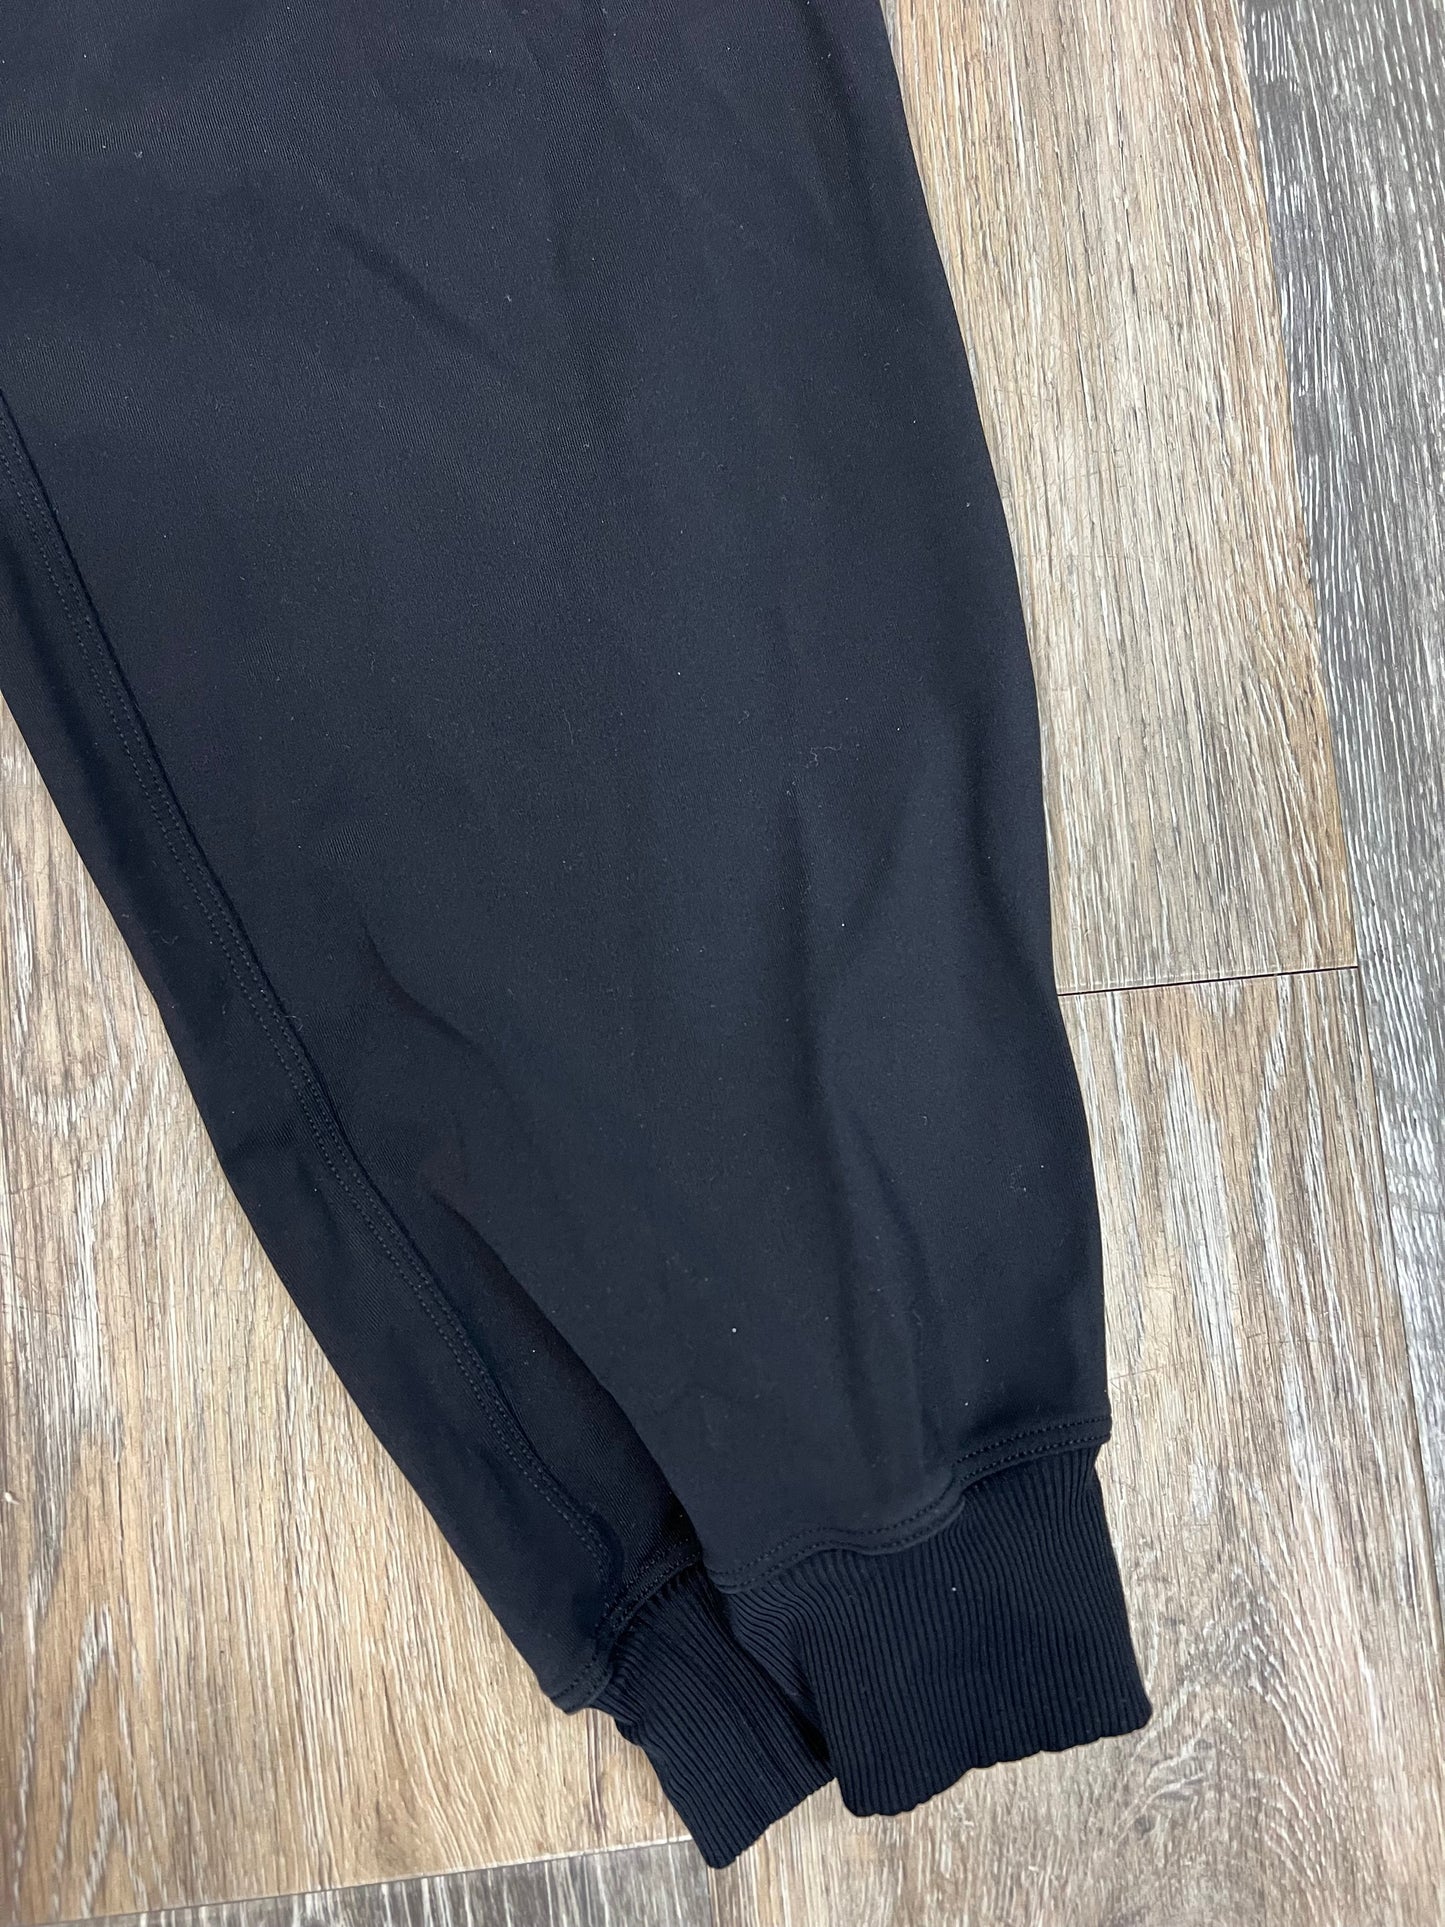 Black Athletic Pants Lululemon, Size 12